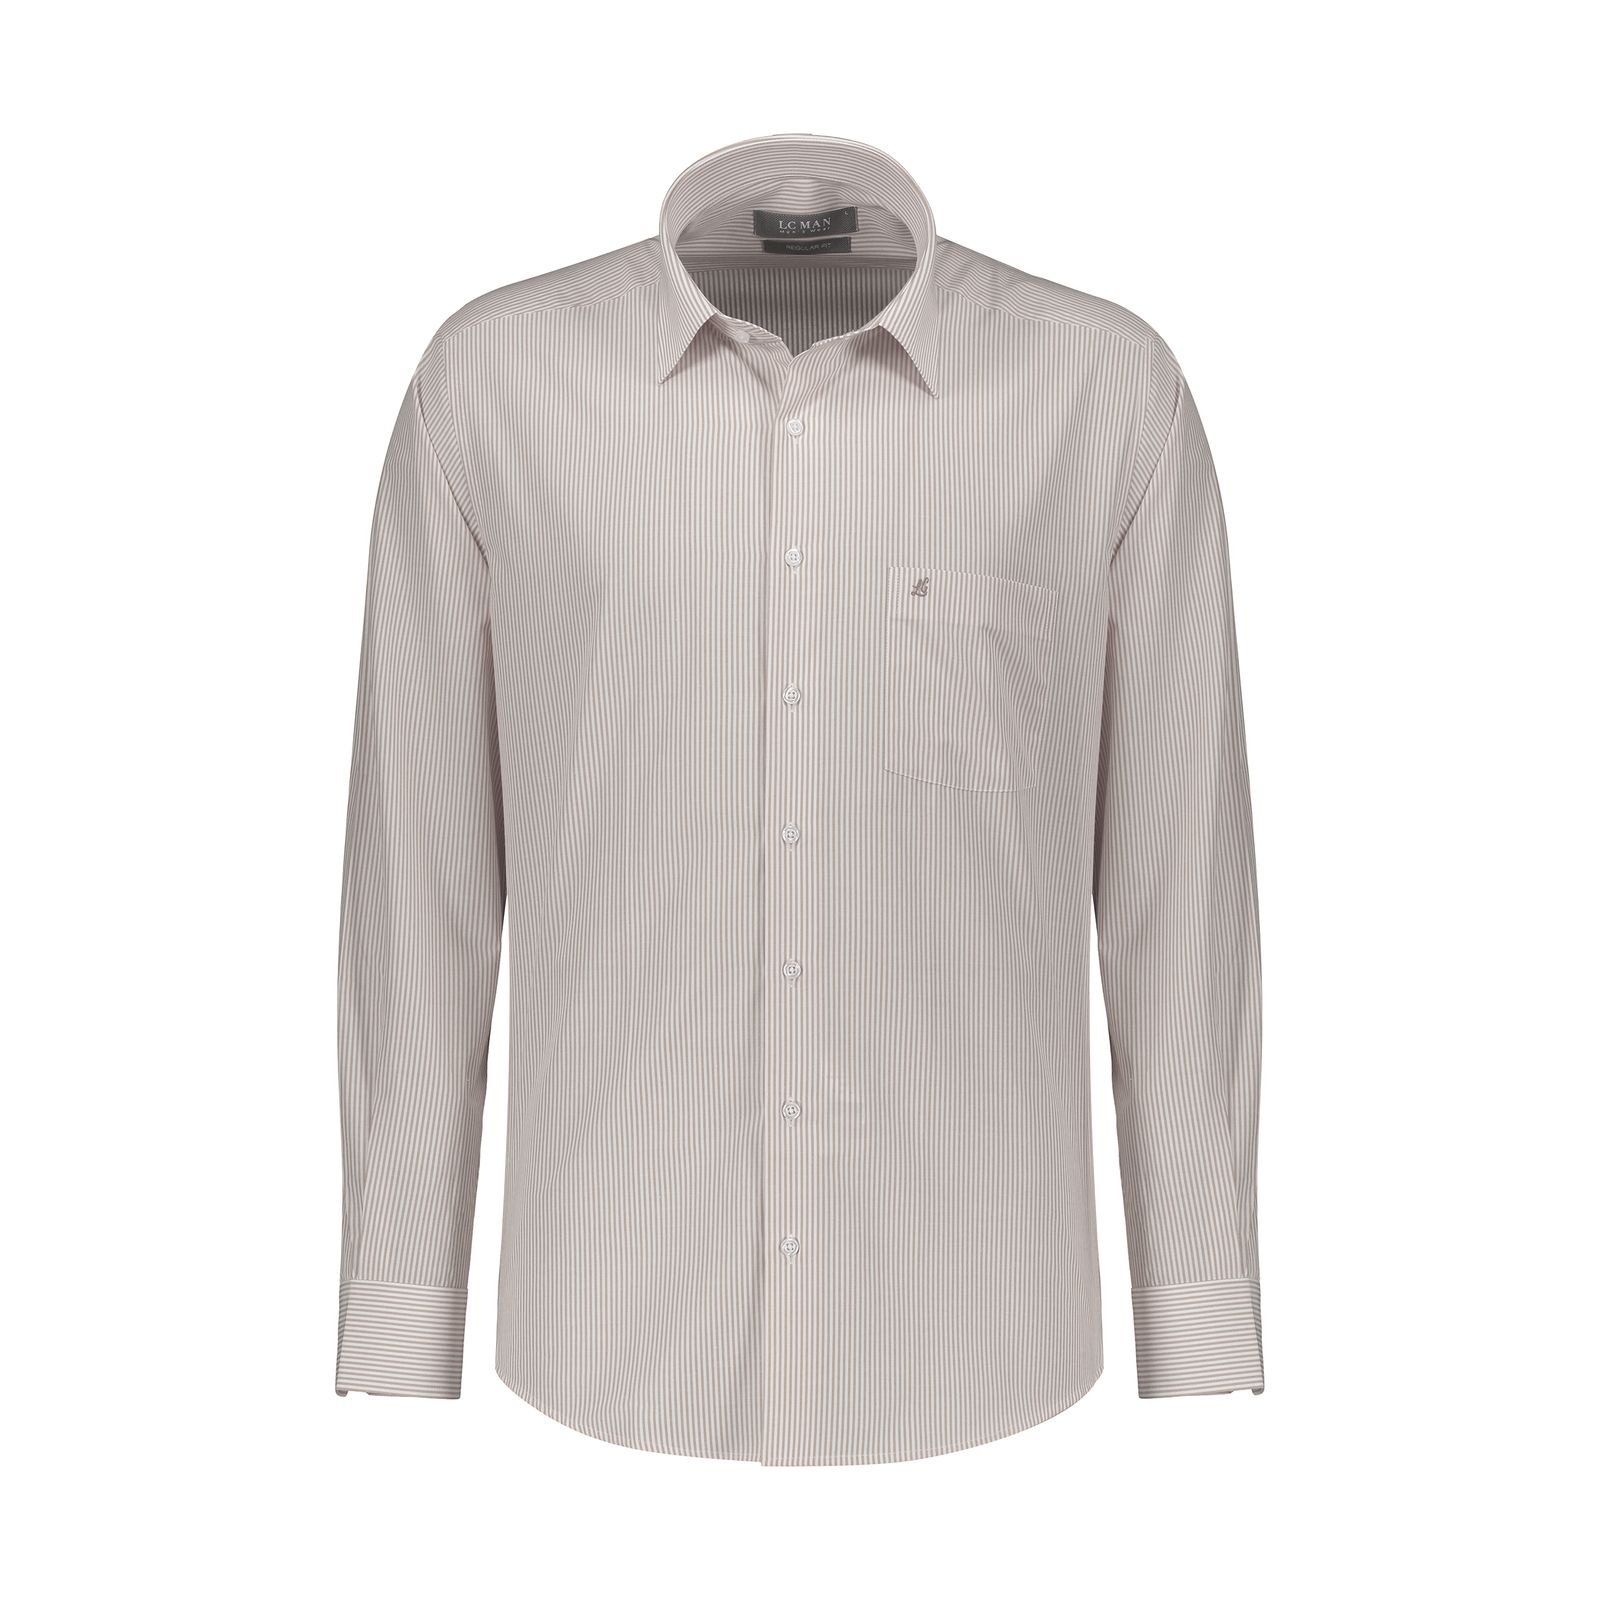 پیراهن آستین بلند مردانه ال سی من مدل 02181290-gray 402